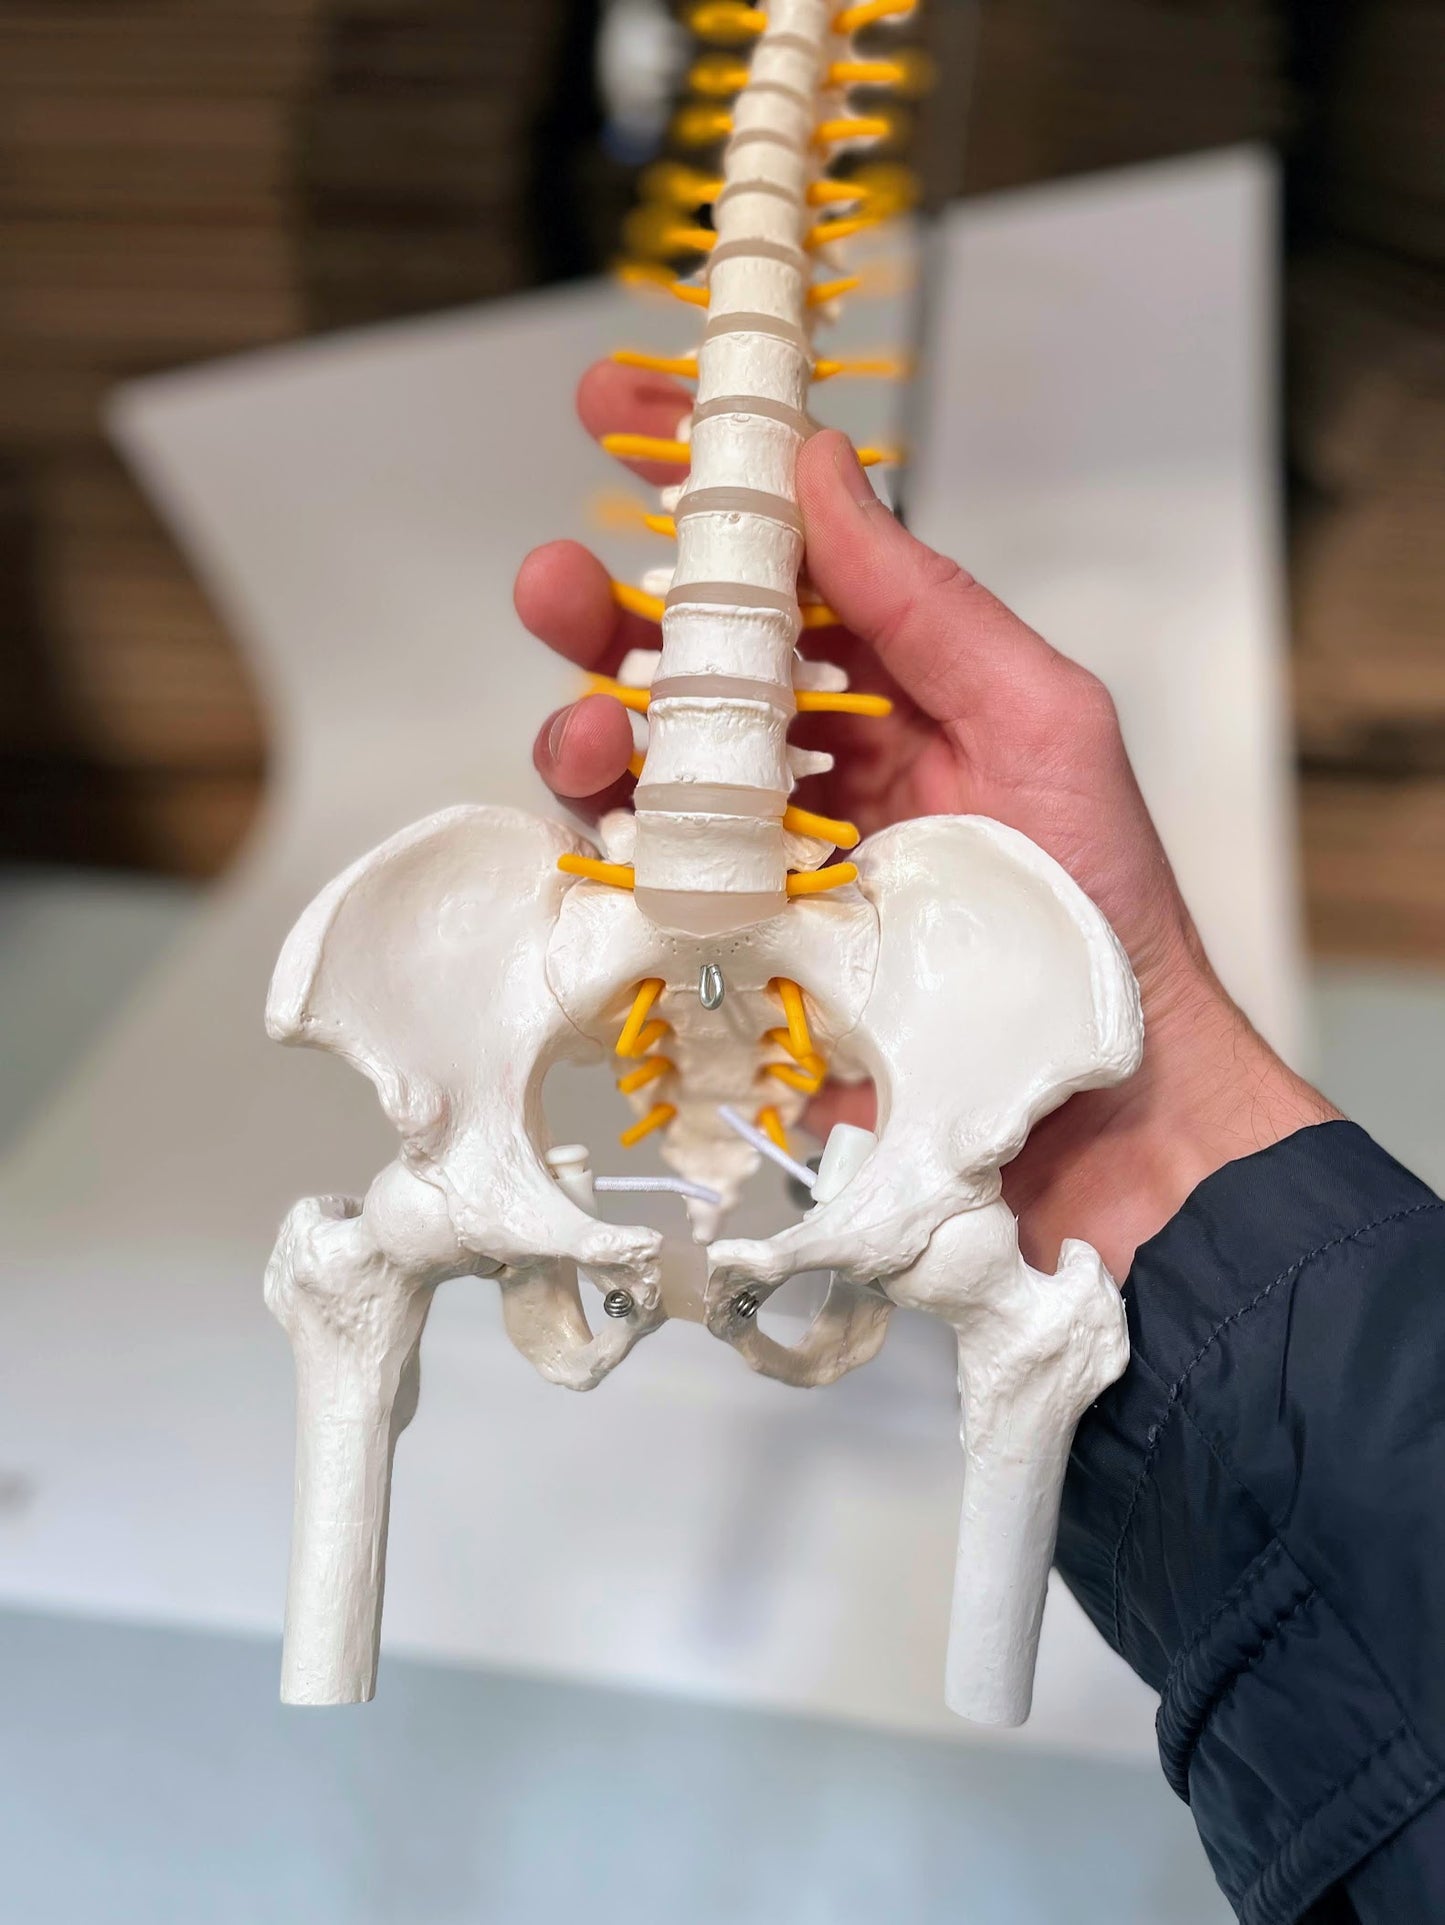 Skalmodell av ryggraden med nerver och andra ben presenterade på stativ